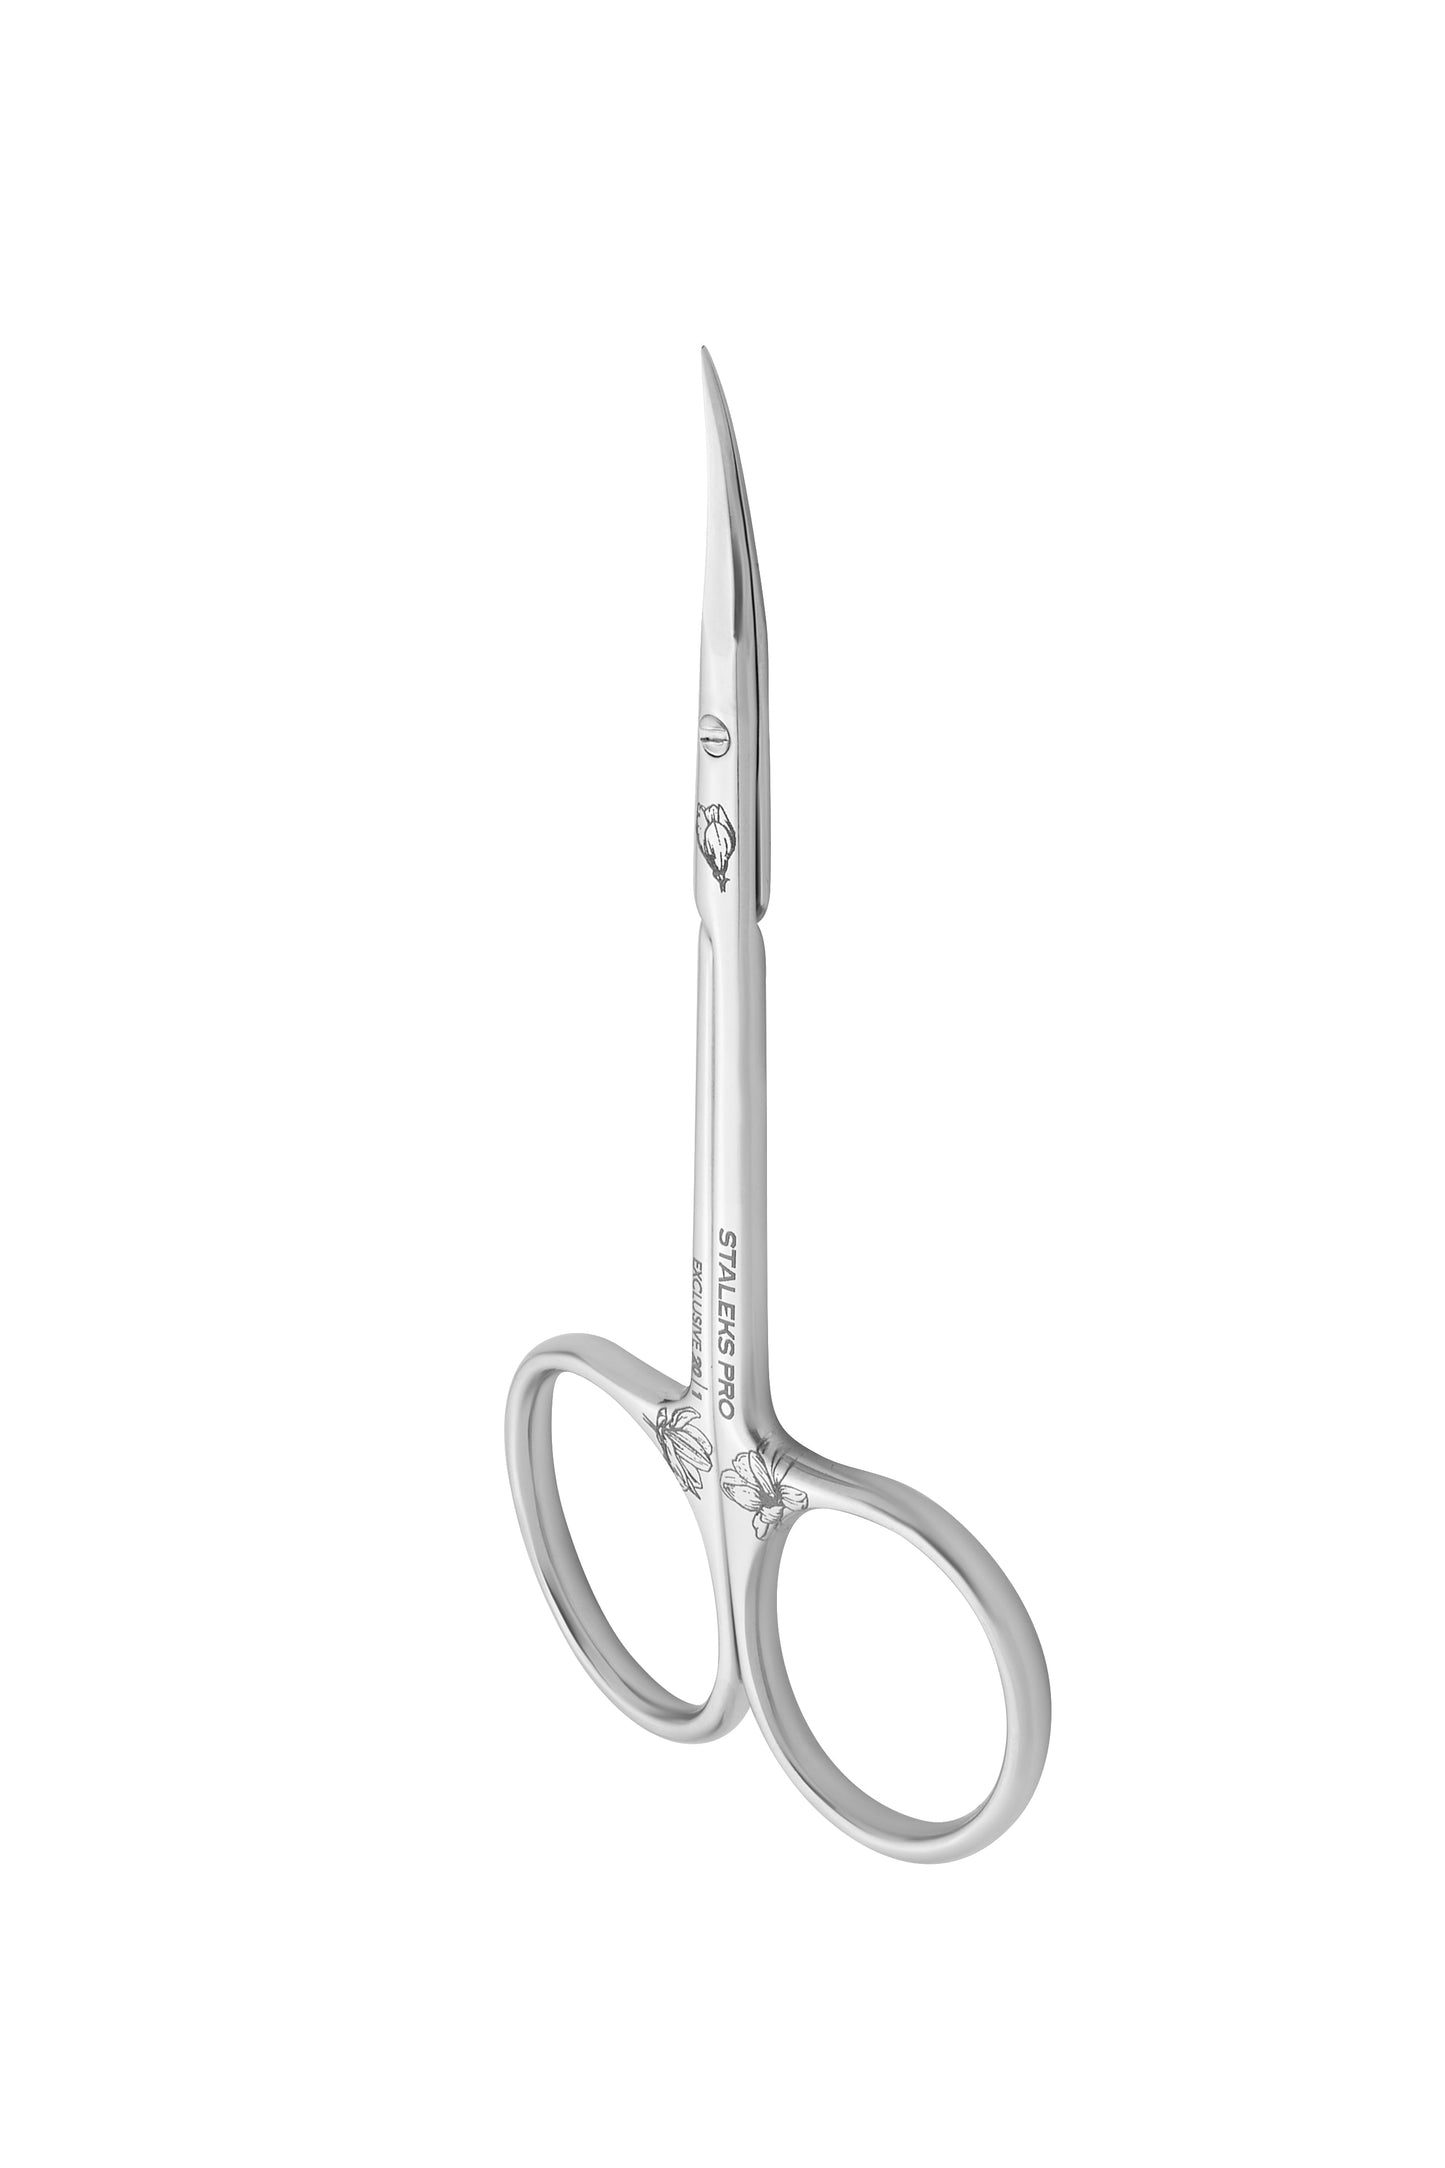 STALEKS-Cuticle scissors EXCLUSIVE 20 TYPE 1 magnolia Professional-2